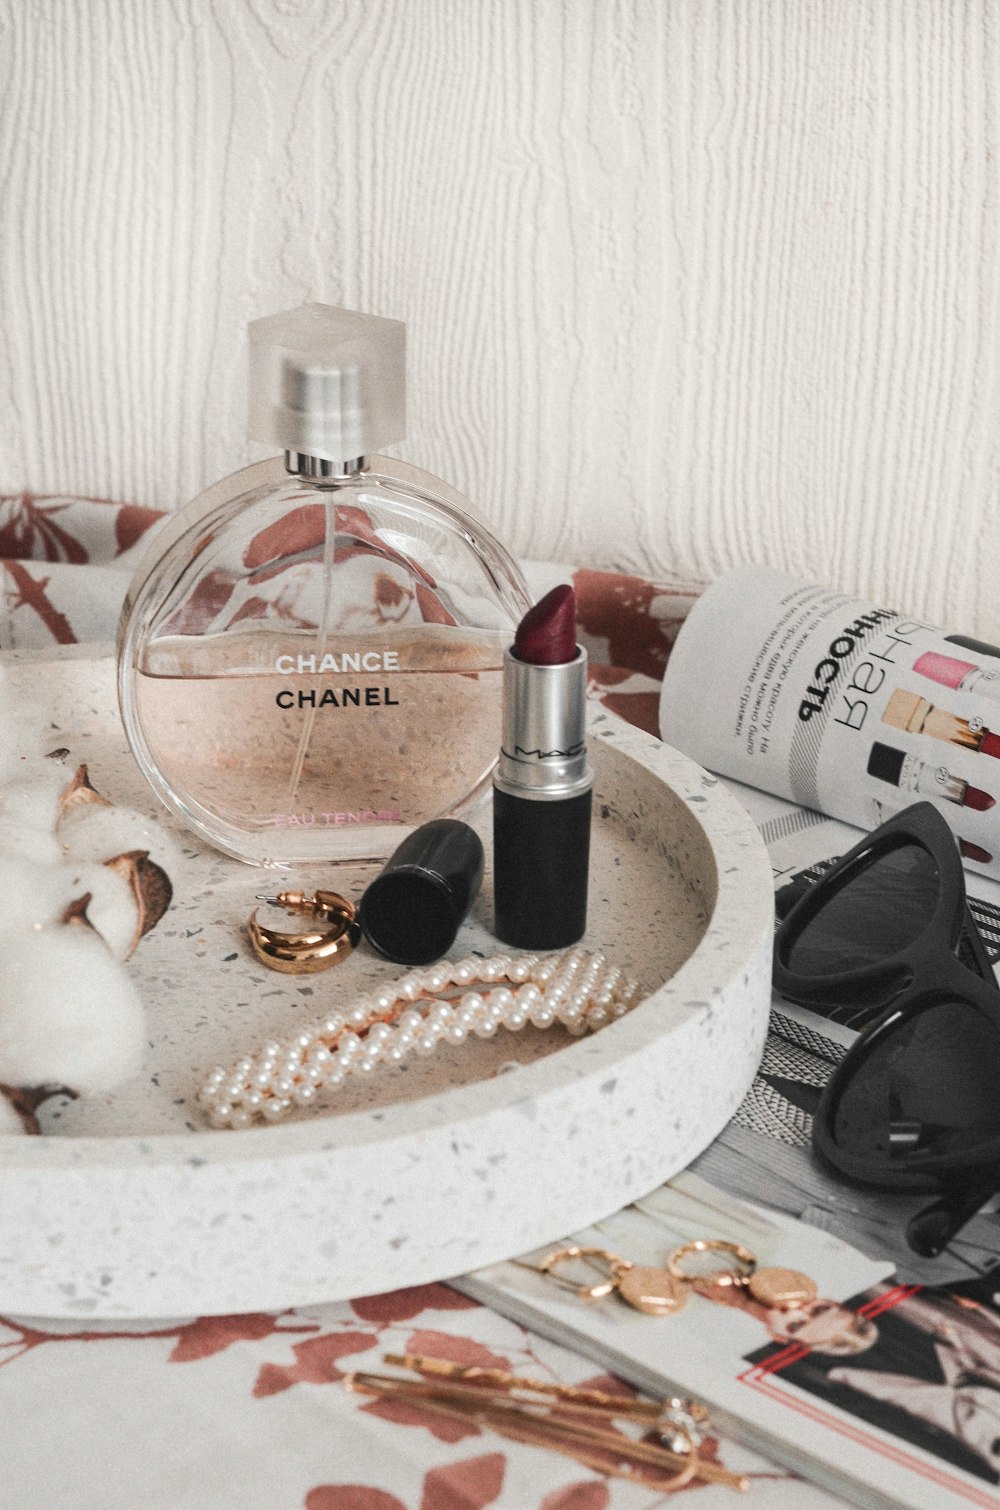 Chanel perfume bottle beside maroon lipstick